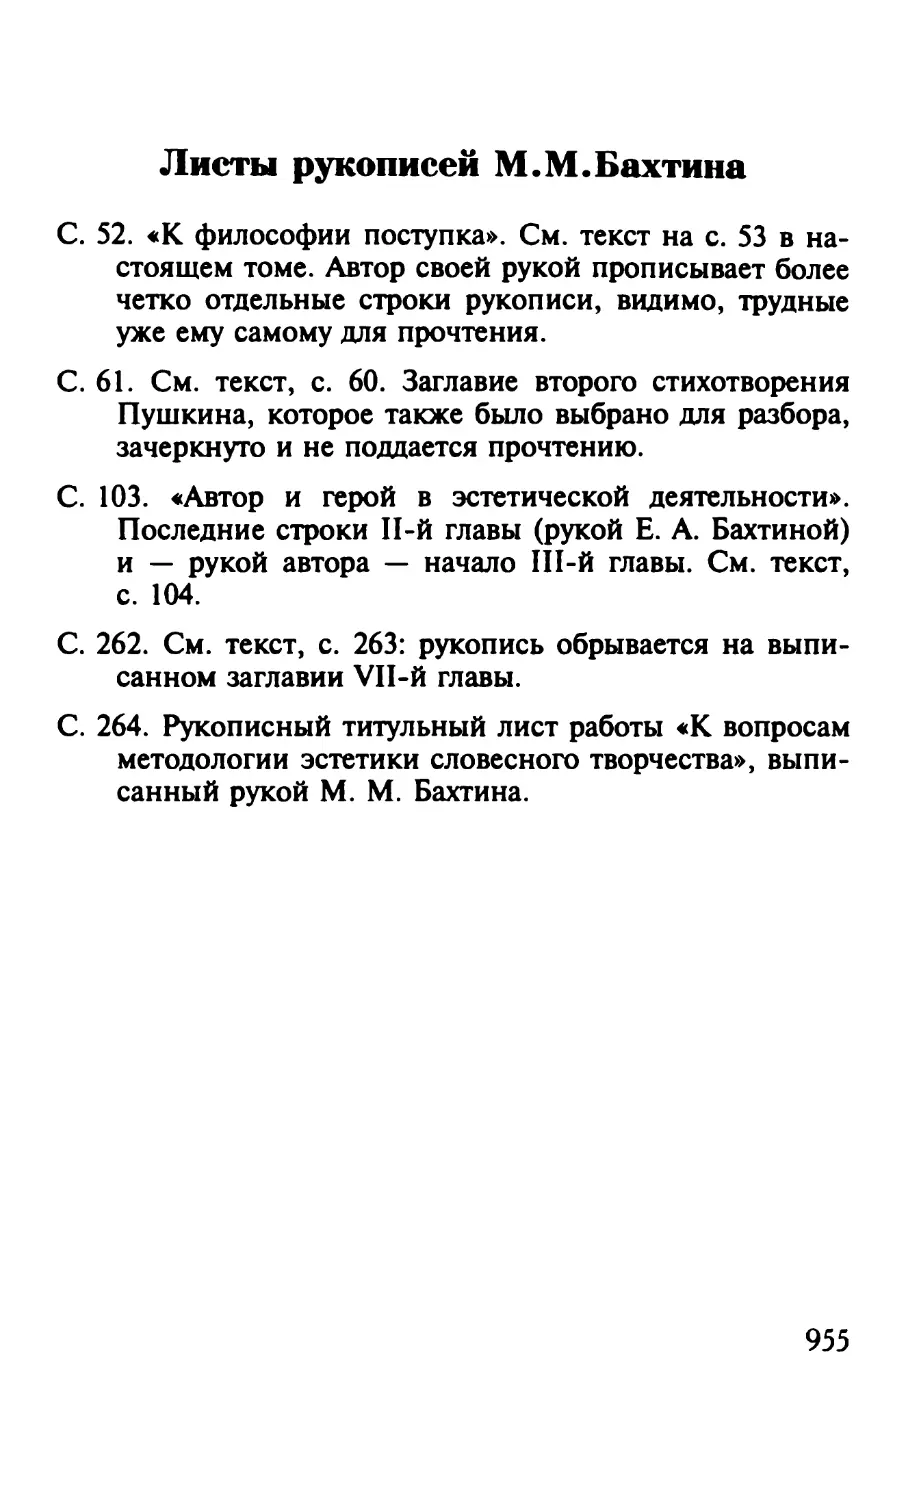 Листы рукописей M. M. Бахтина